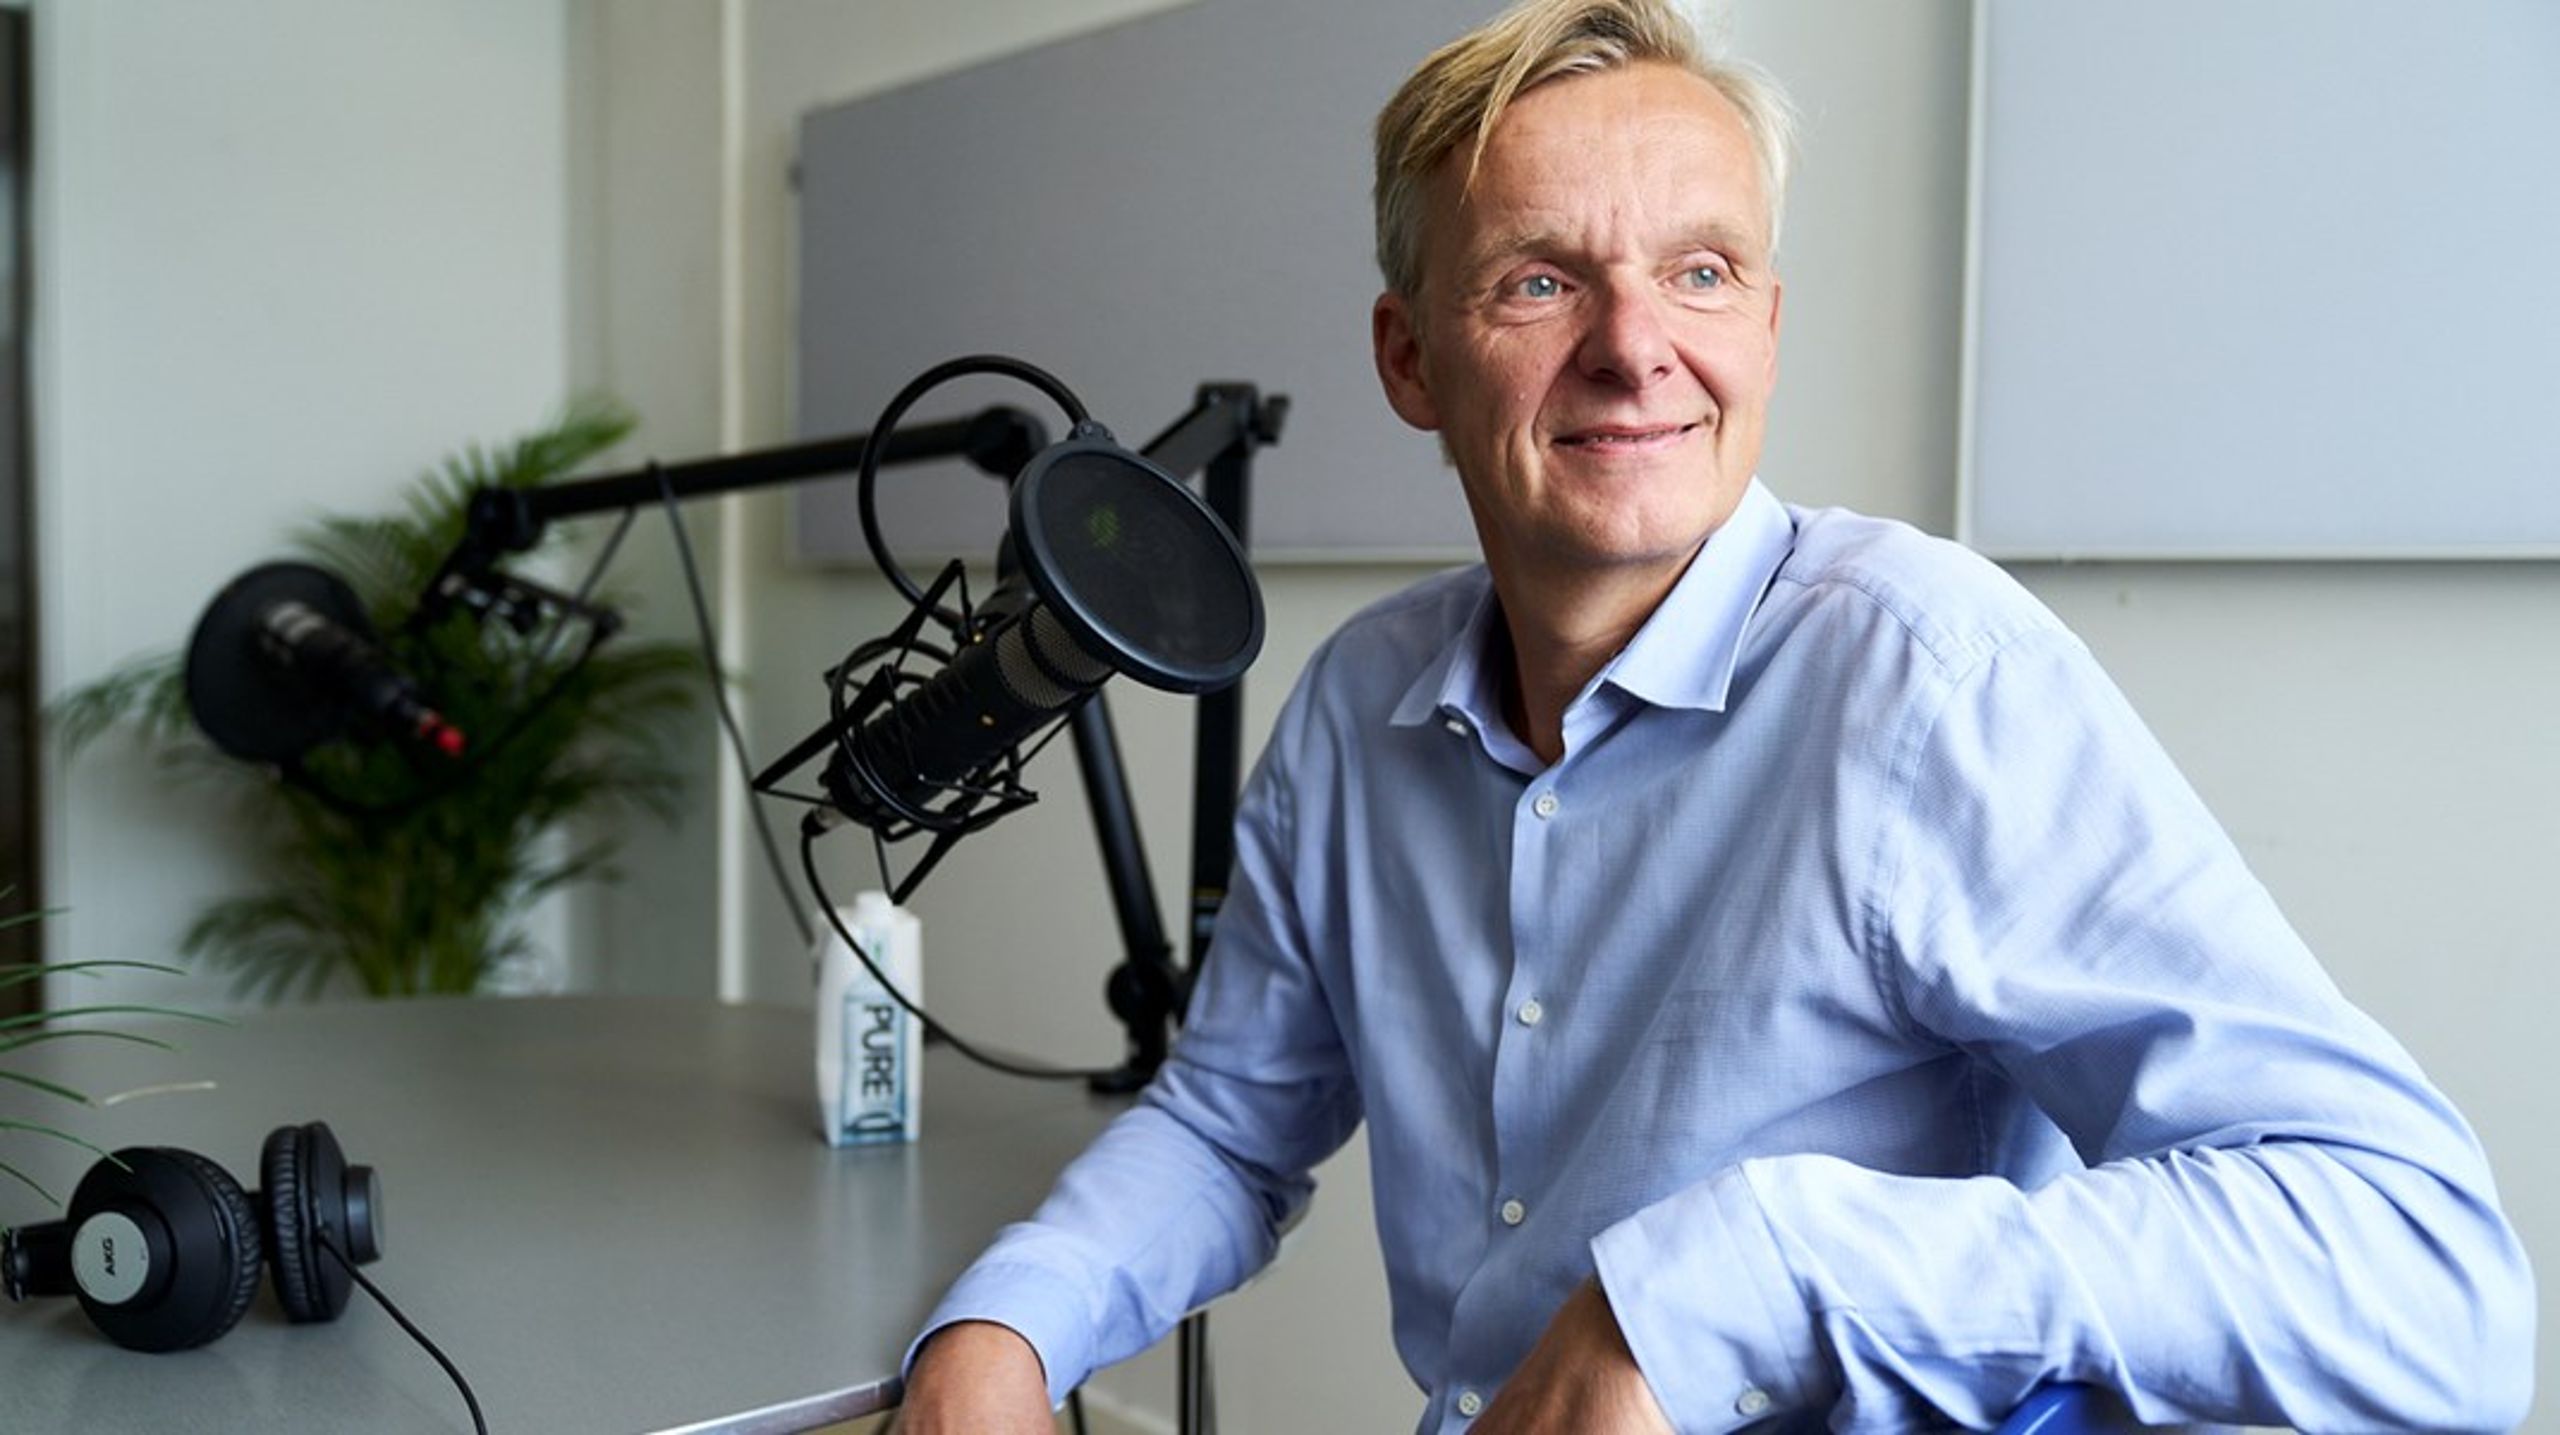 Poul Madsen har skiftet hjørnekontoret på Rådhuspladsen ud med et podcaststudie, hvor han optager 'Forsiden med Poul Madsen'. I en ny bog beskriver han de største sager fra hans 14 år som ansvarshavende chefredaktør på Ekstra Bladet